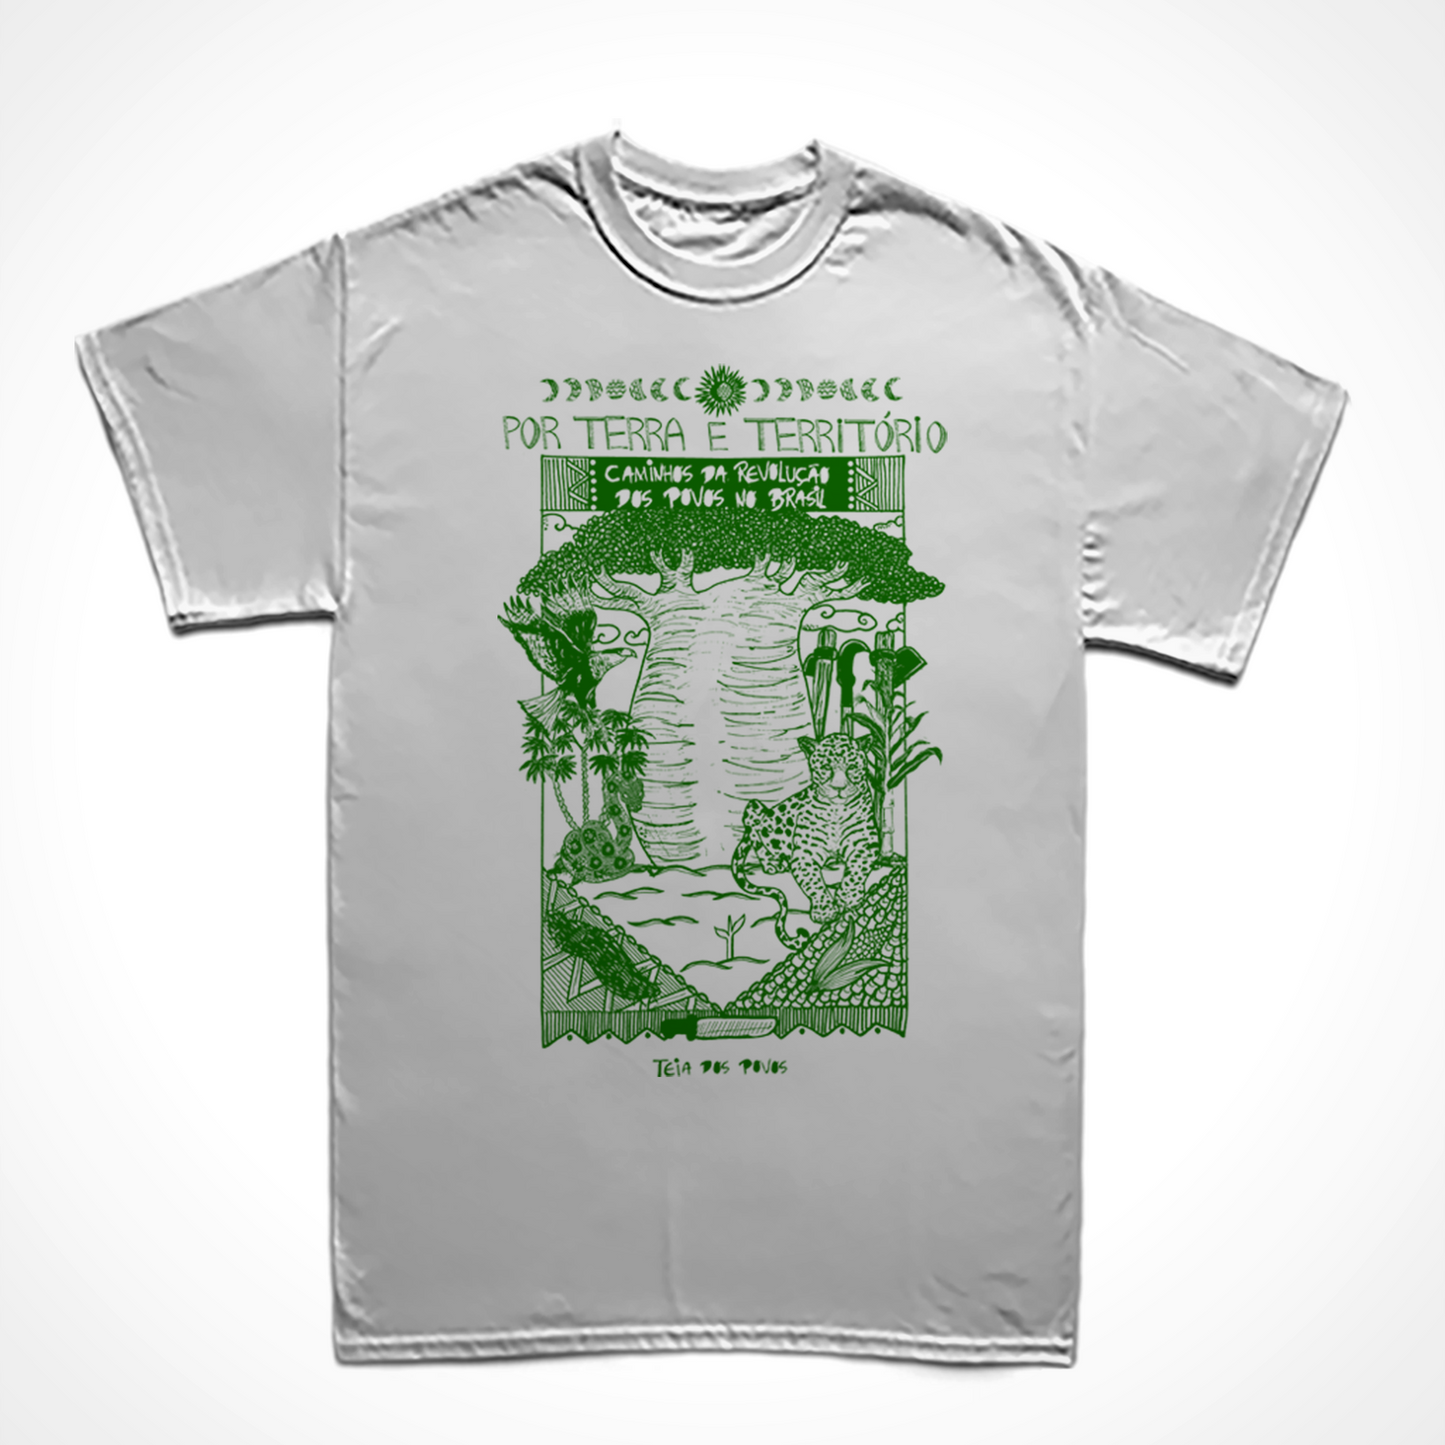 Camiseta Básica Por Terra e Território: Teia dos Povos